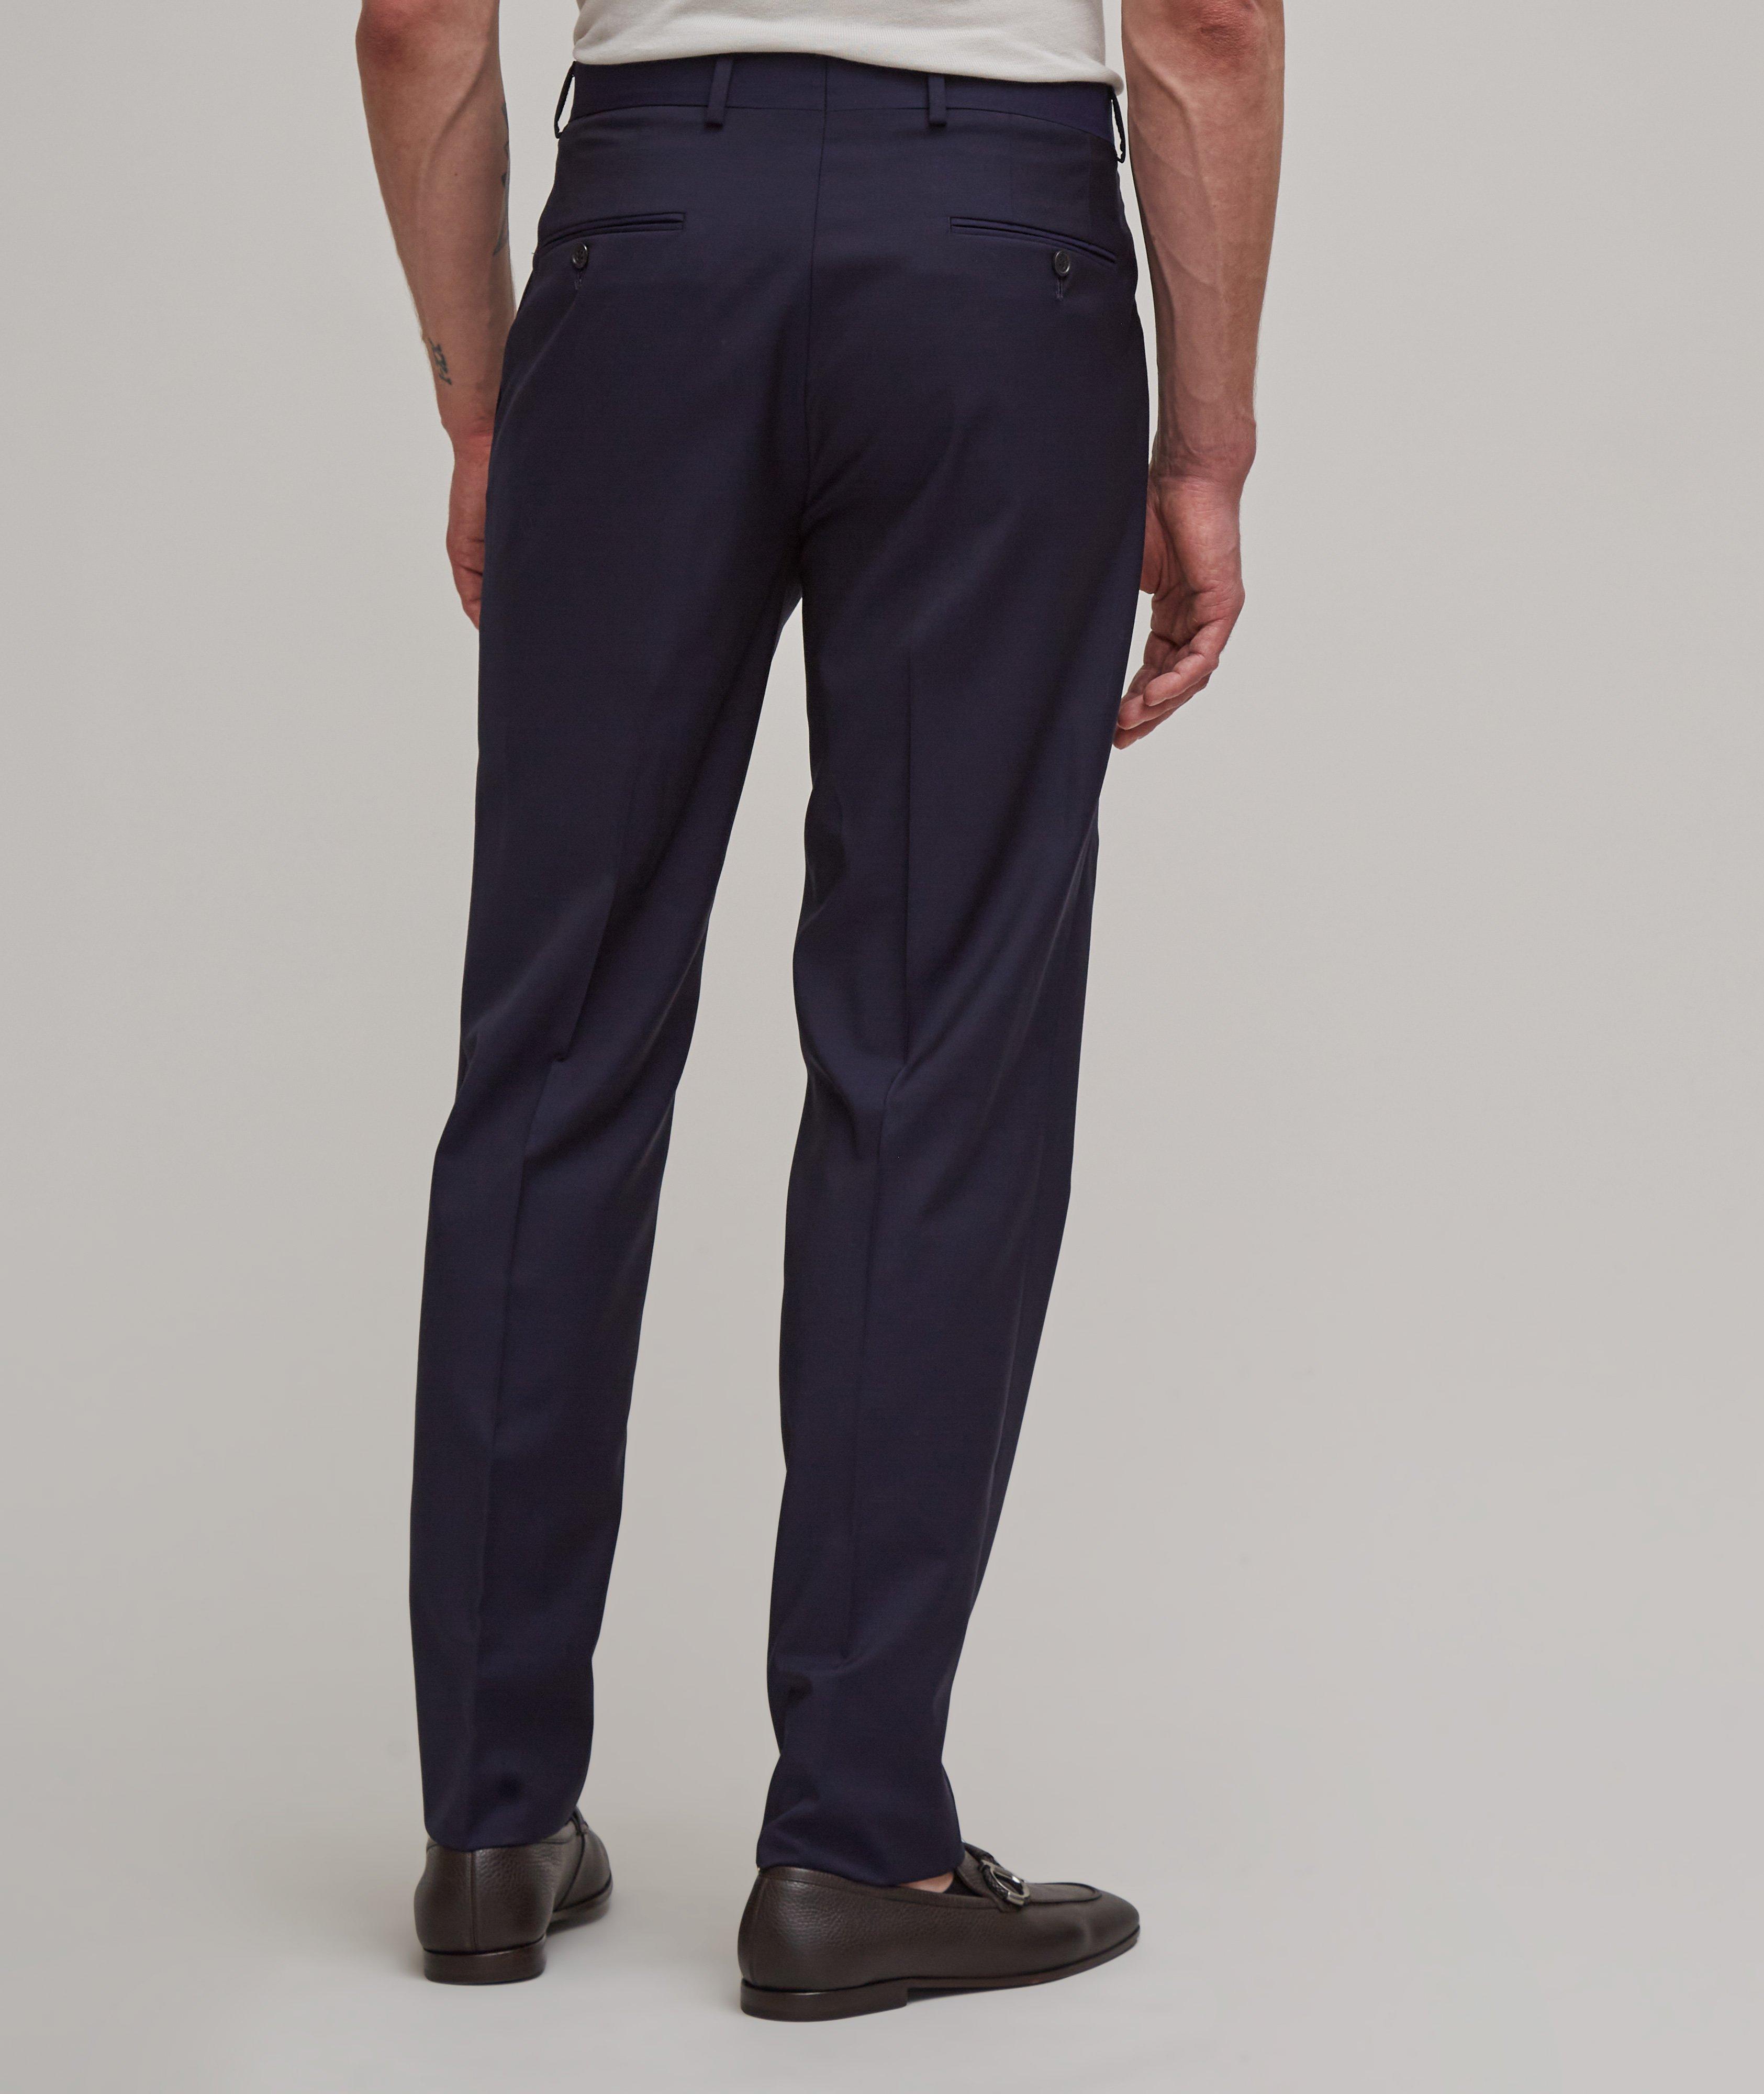 Pantalon habillé en laine Super 110, collection tropicale image 2